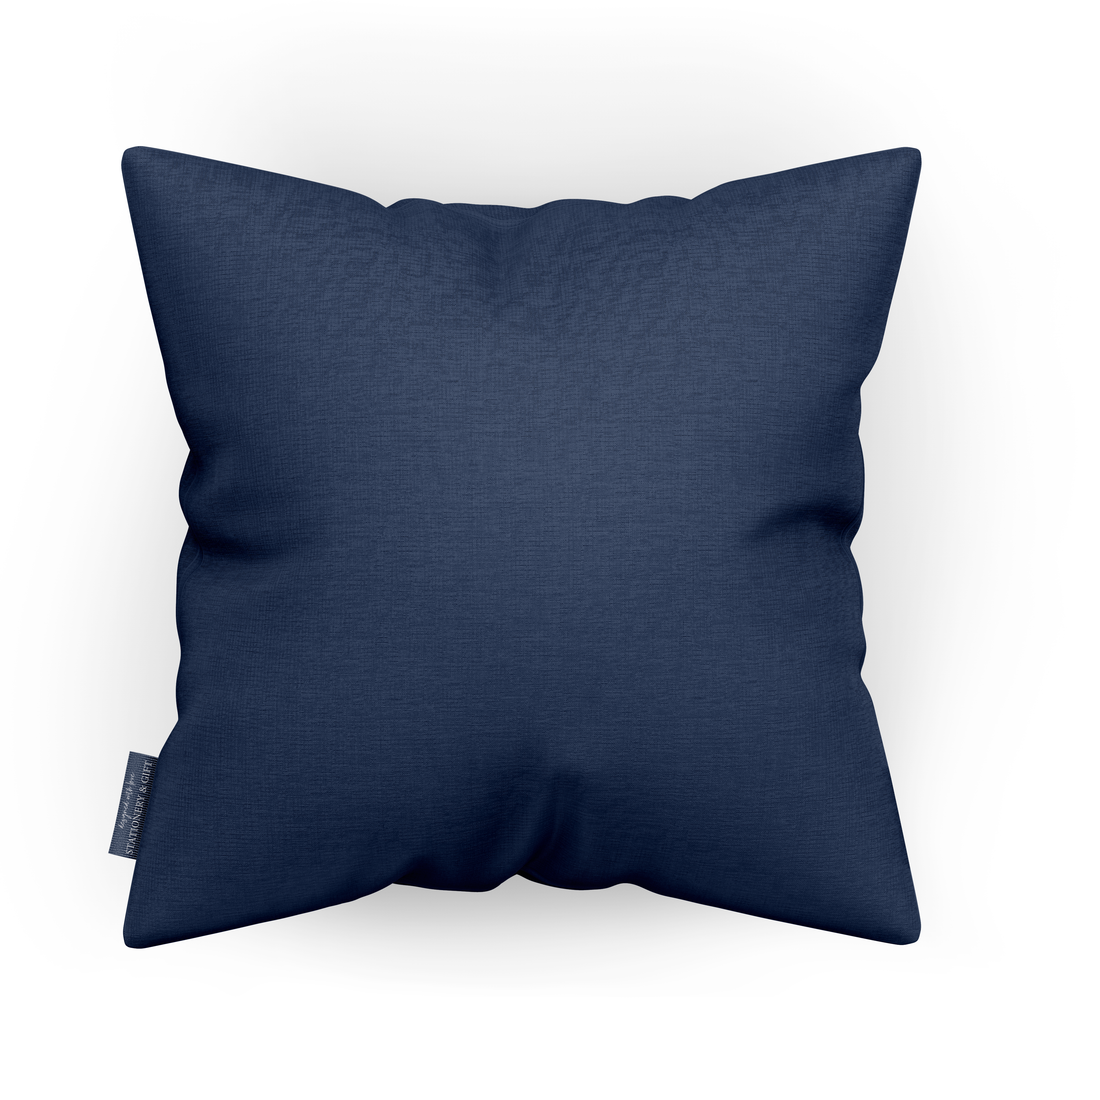 Cushion 50 x 50 cm | Lounge cushion